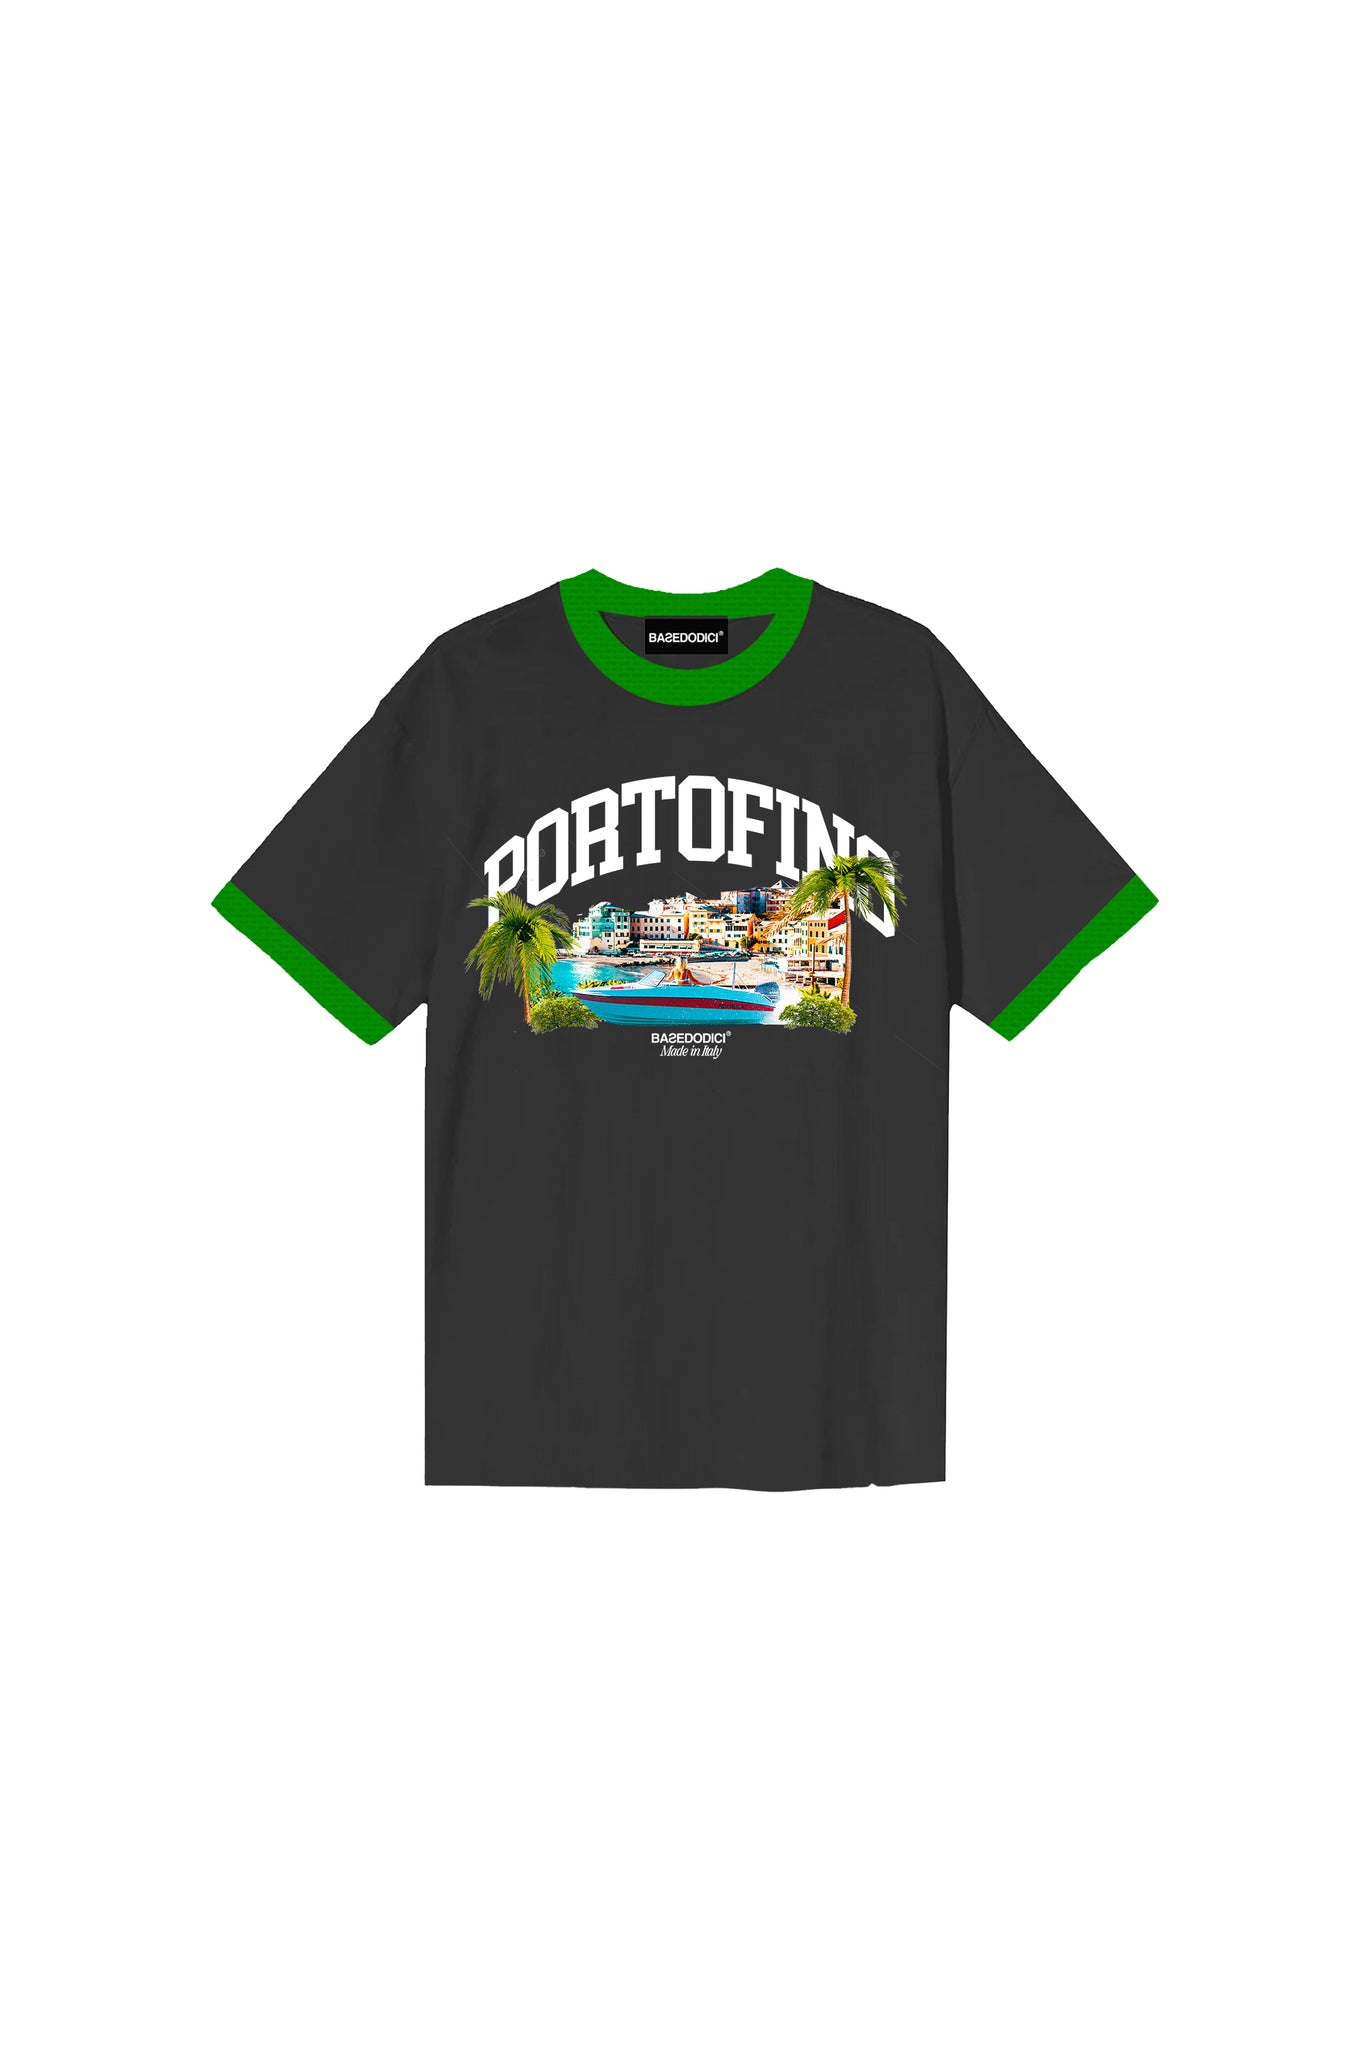 T-Shirt “FORSUMMER” Portofino Black